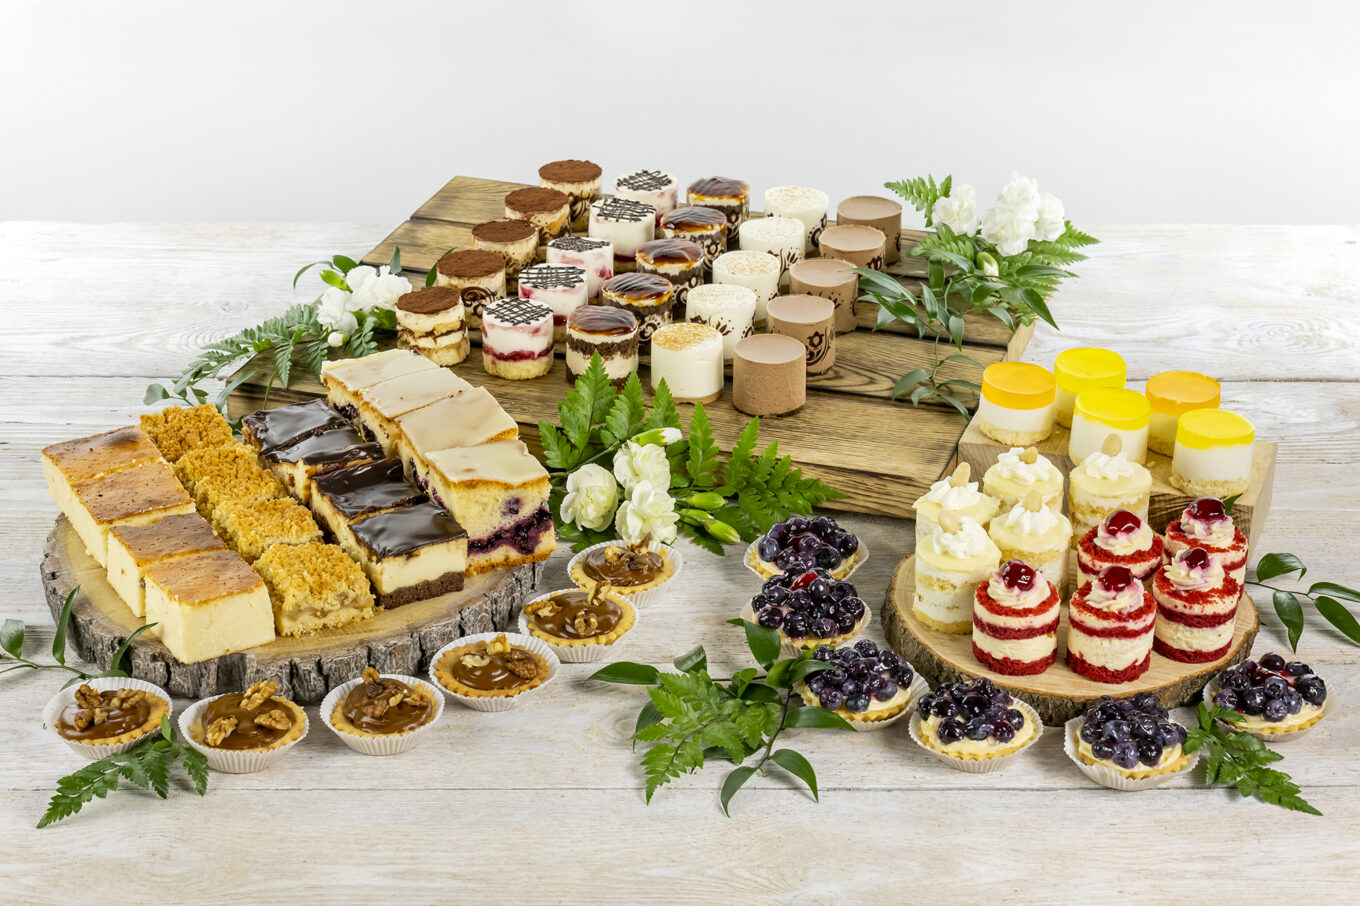 dulce nano buffet Cukiernia Jacek Placek es sinónimo del sabor de los pasteles caseros elaborados con productos naturales.